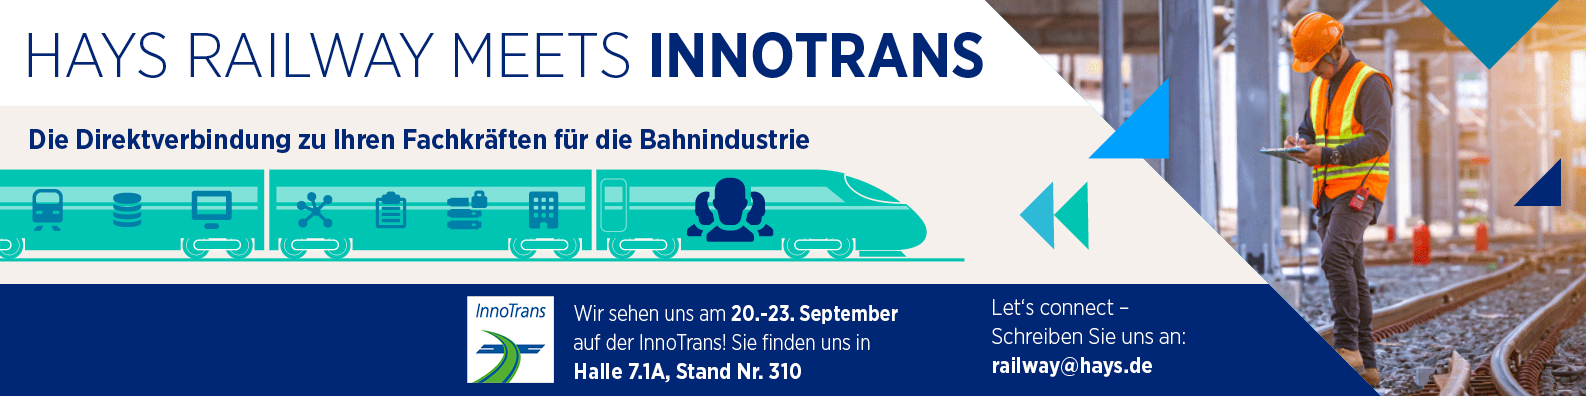 Wir sehen uns auf der InnoTrans in Berlin 20-23. September in der Halle 7.1A, Stand Nr. 310. Infos & Fragen: railway@hays.de.